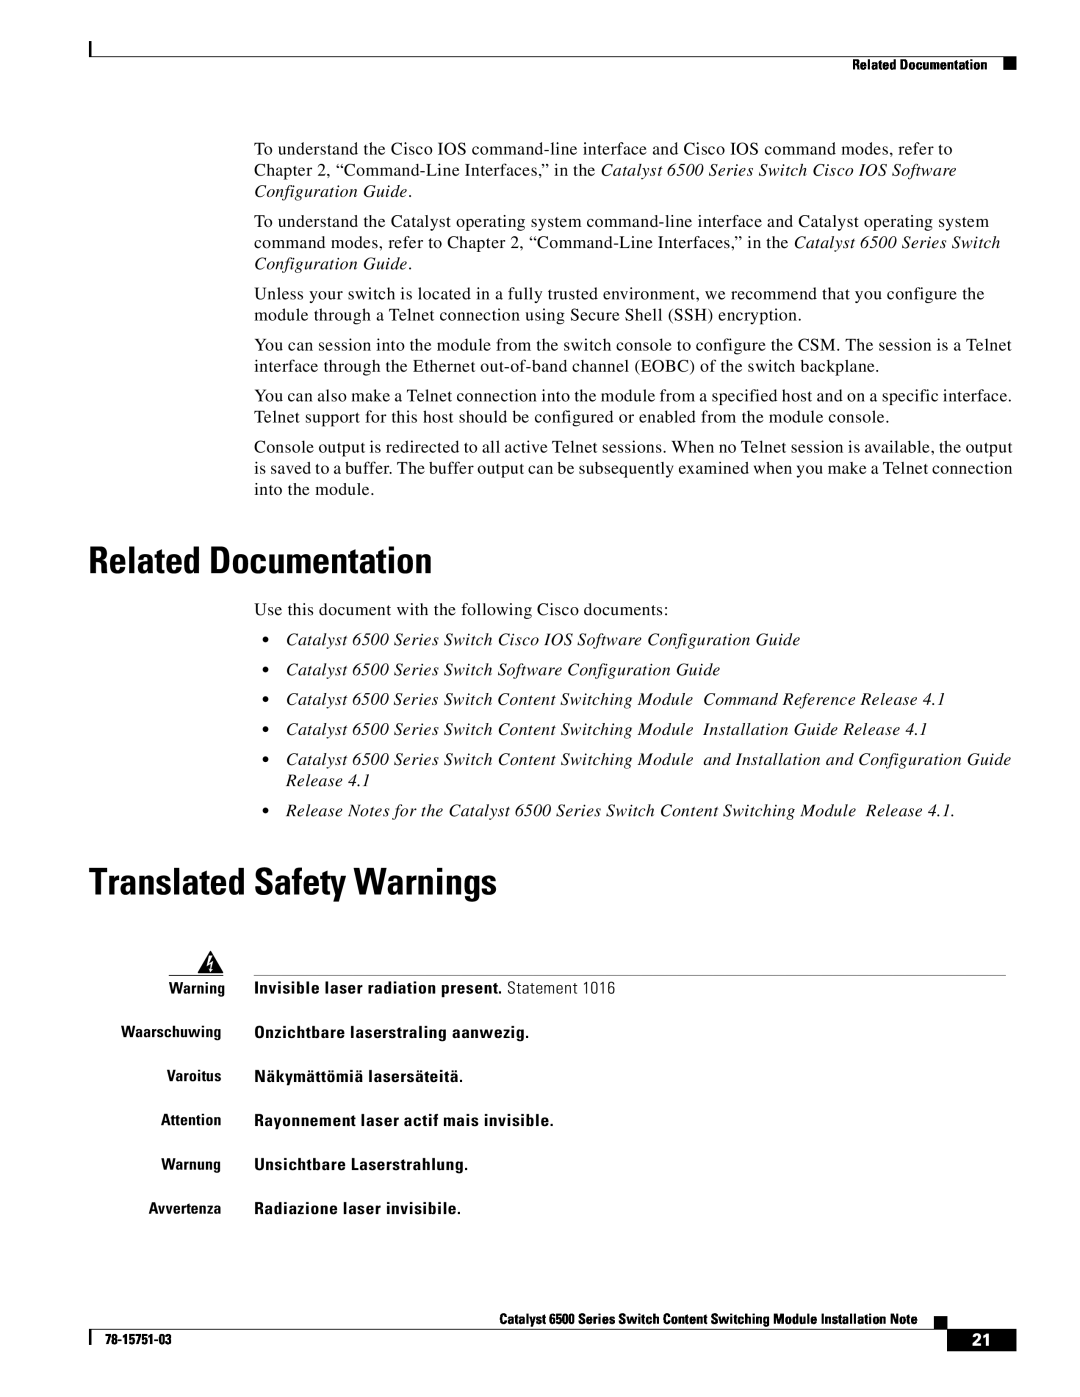 Cisco Systems WS-X6066-SLB-APC manual Related Documentation, Translated Safety Warnings, Varoitus Näkymättömiä lasersäteitä 